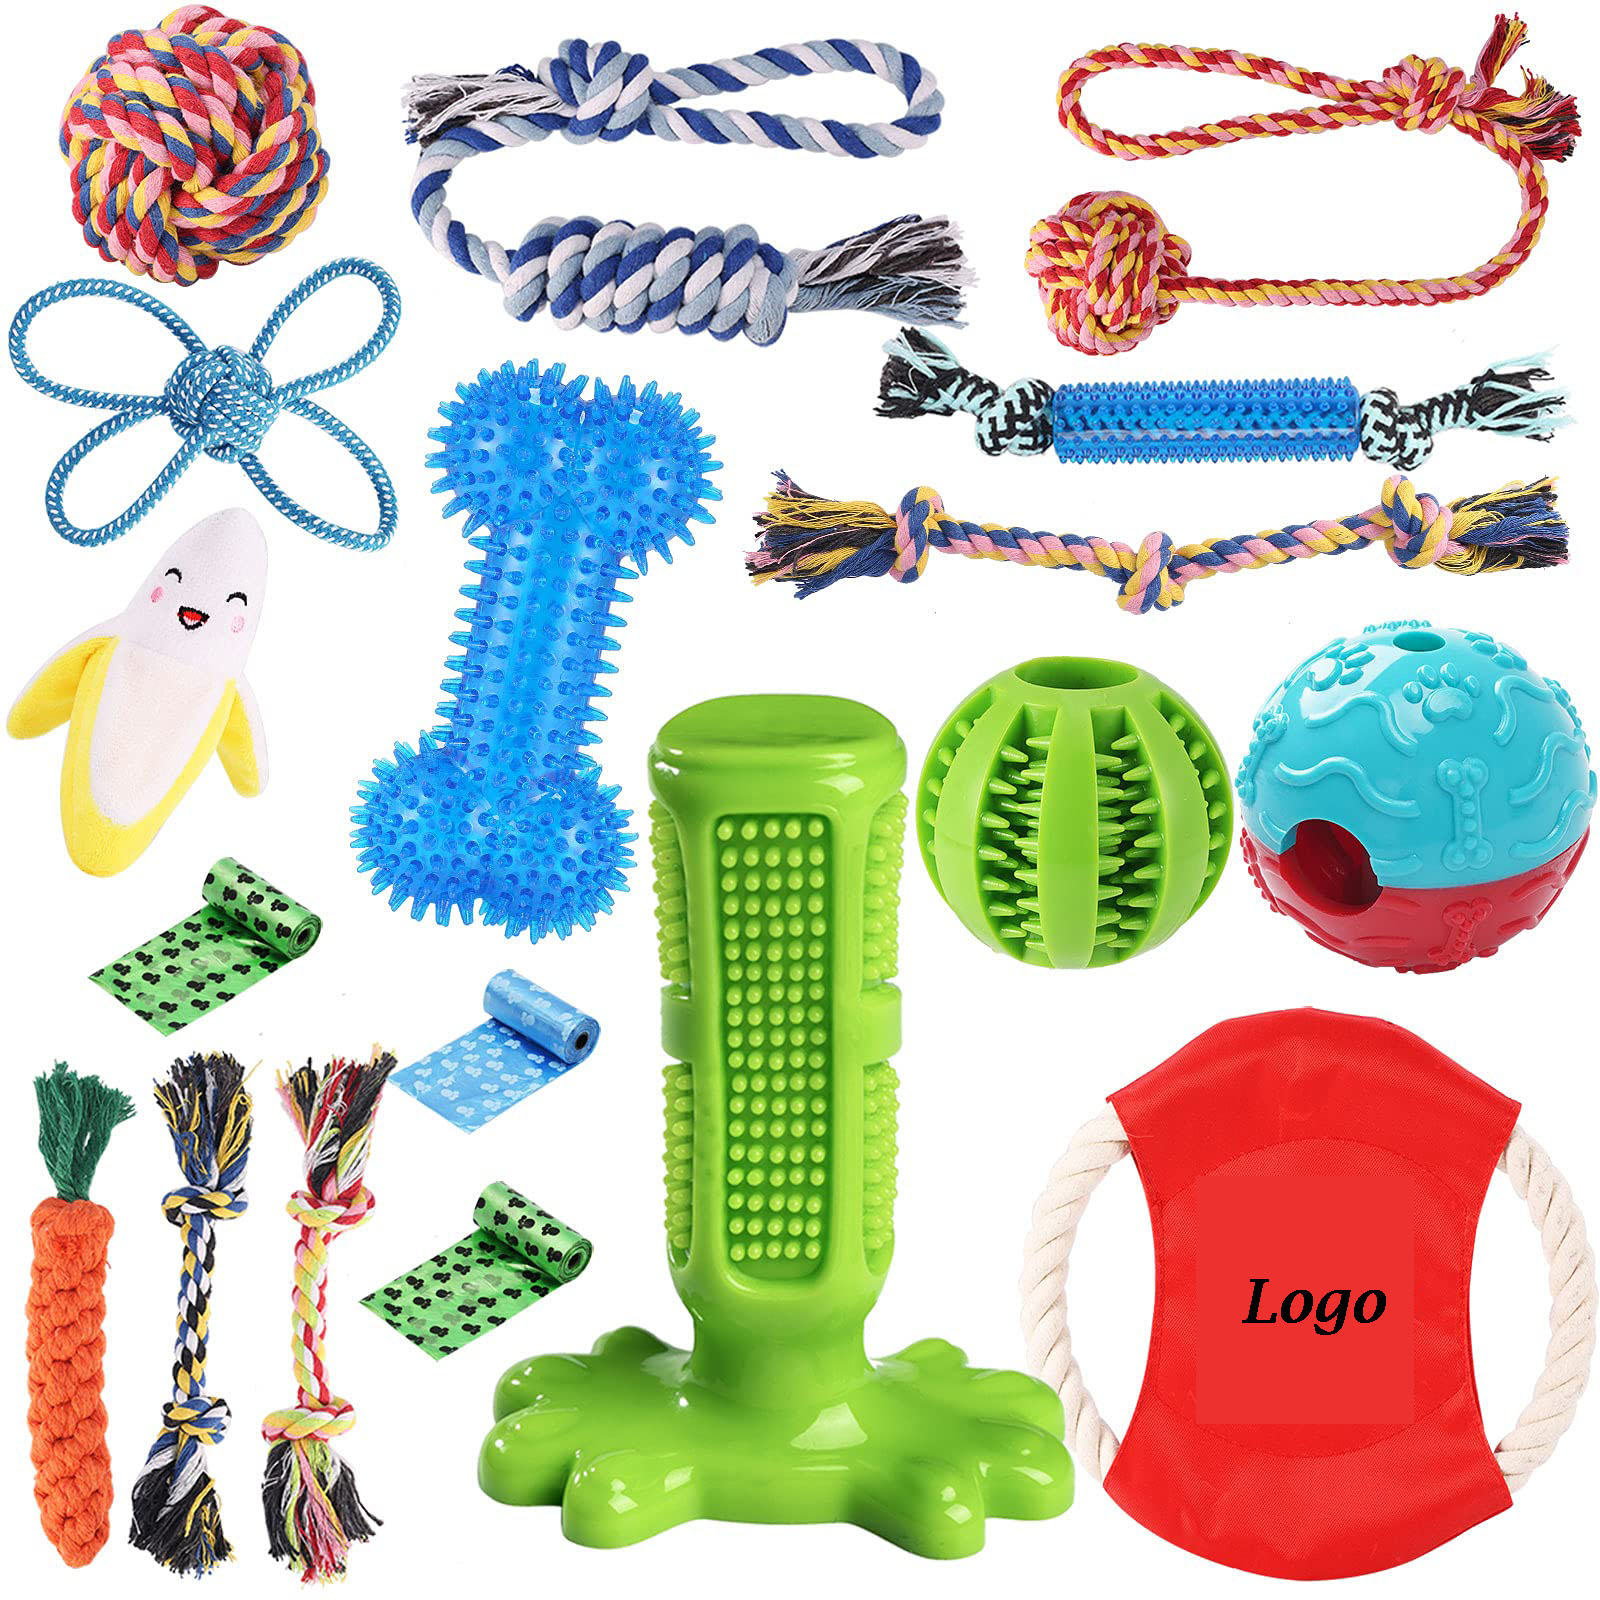 18 Pek Dog nyapek Toys Kit pikeun anak anjing